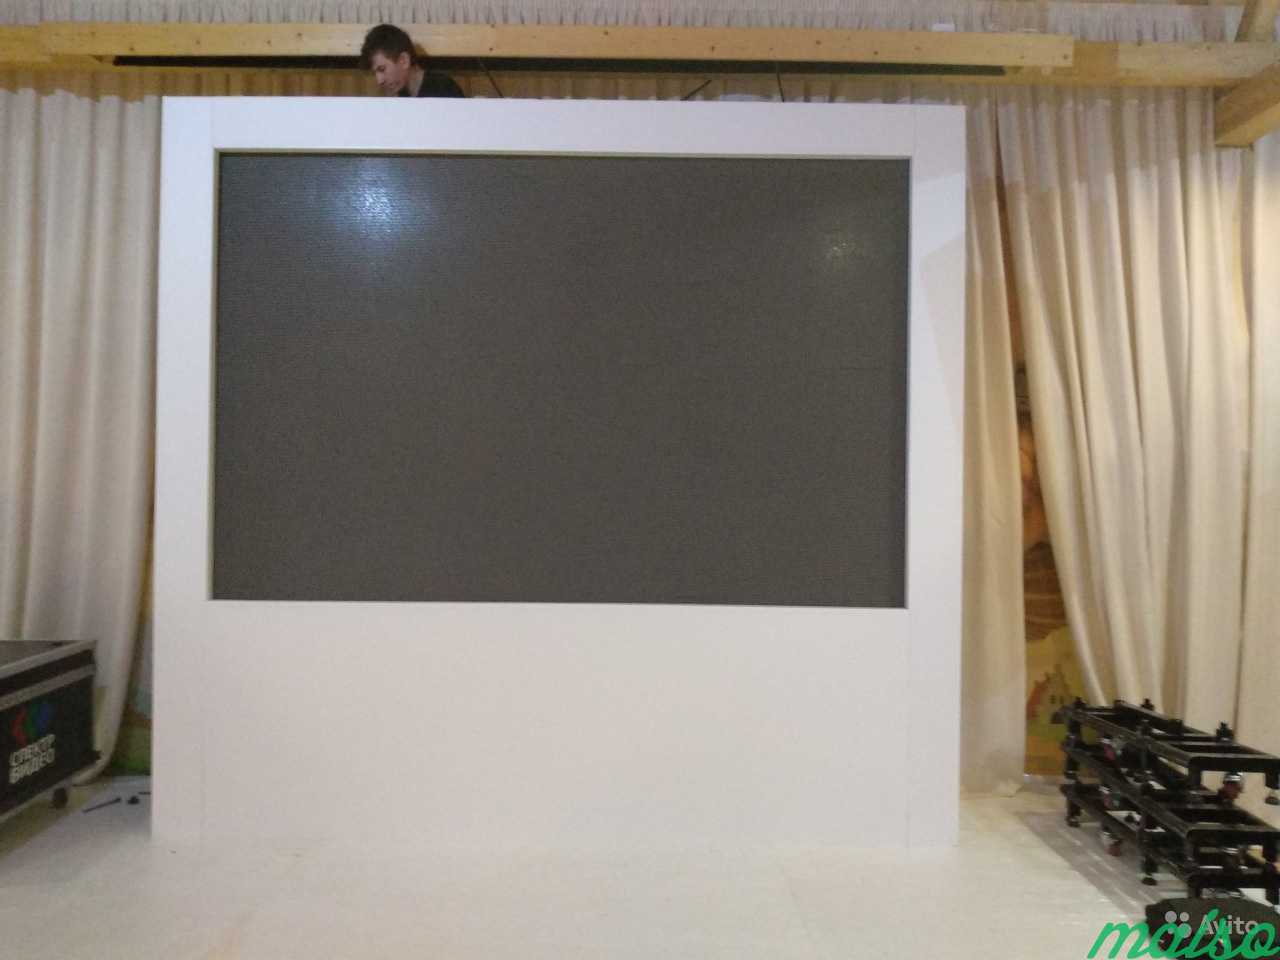 Аренда LED Экранов, проекторов в Москве. Фото 2